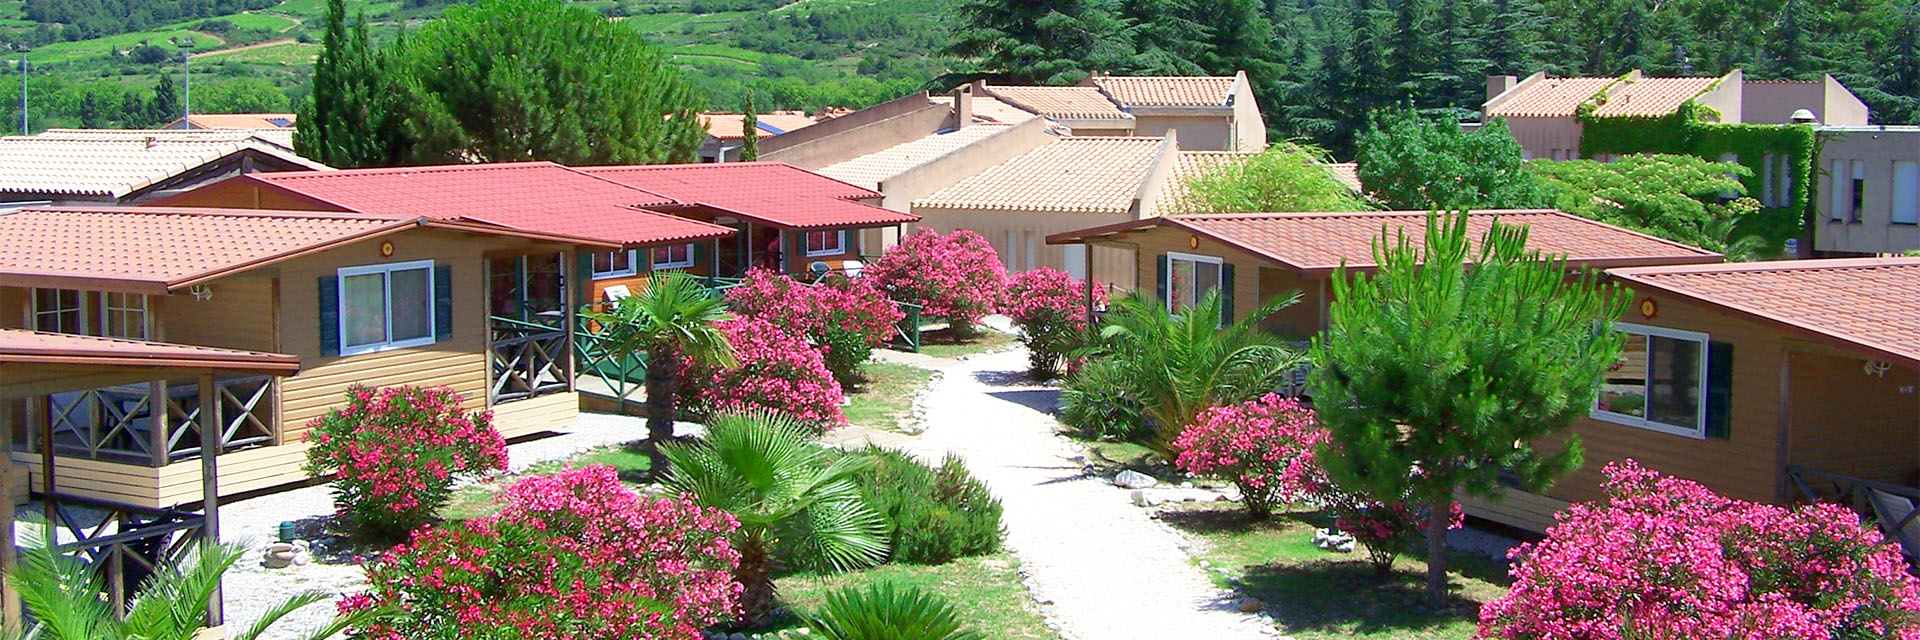 Domaine du Roc Nantais - Village Vacances Cap France